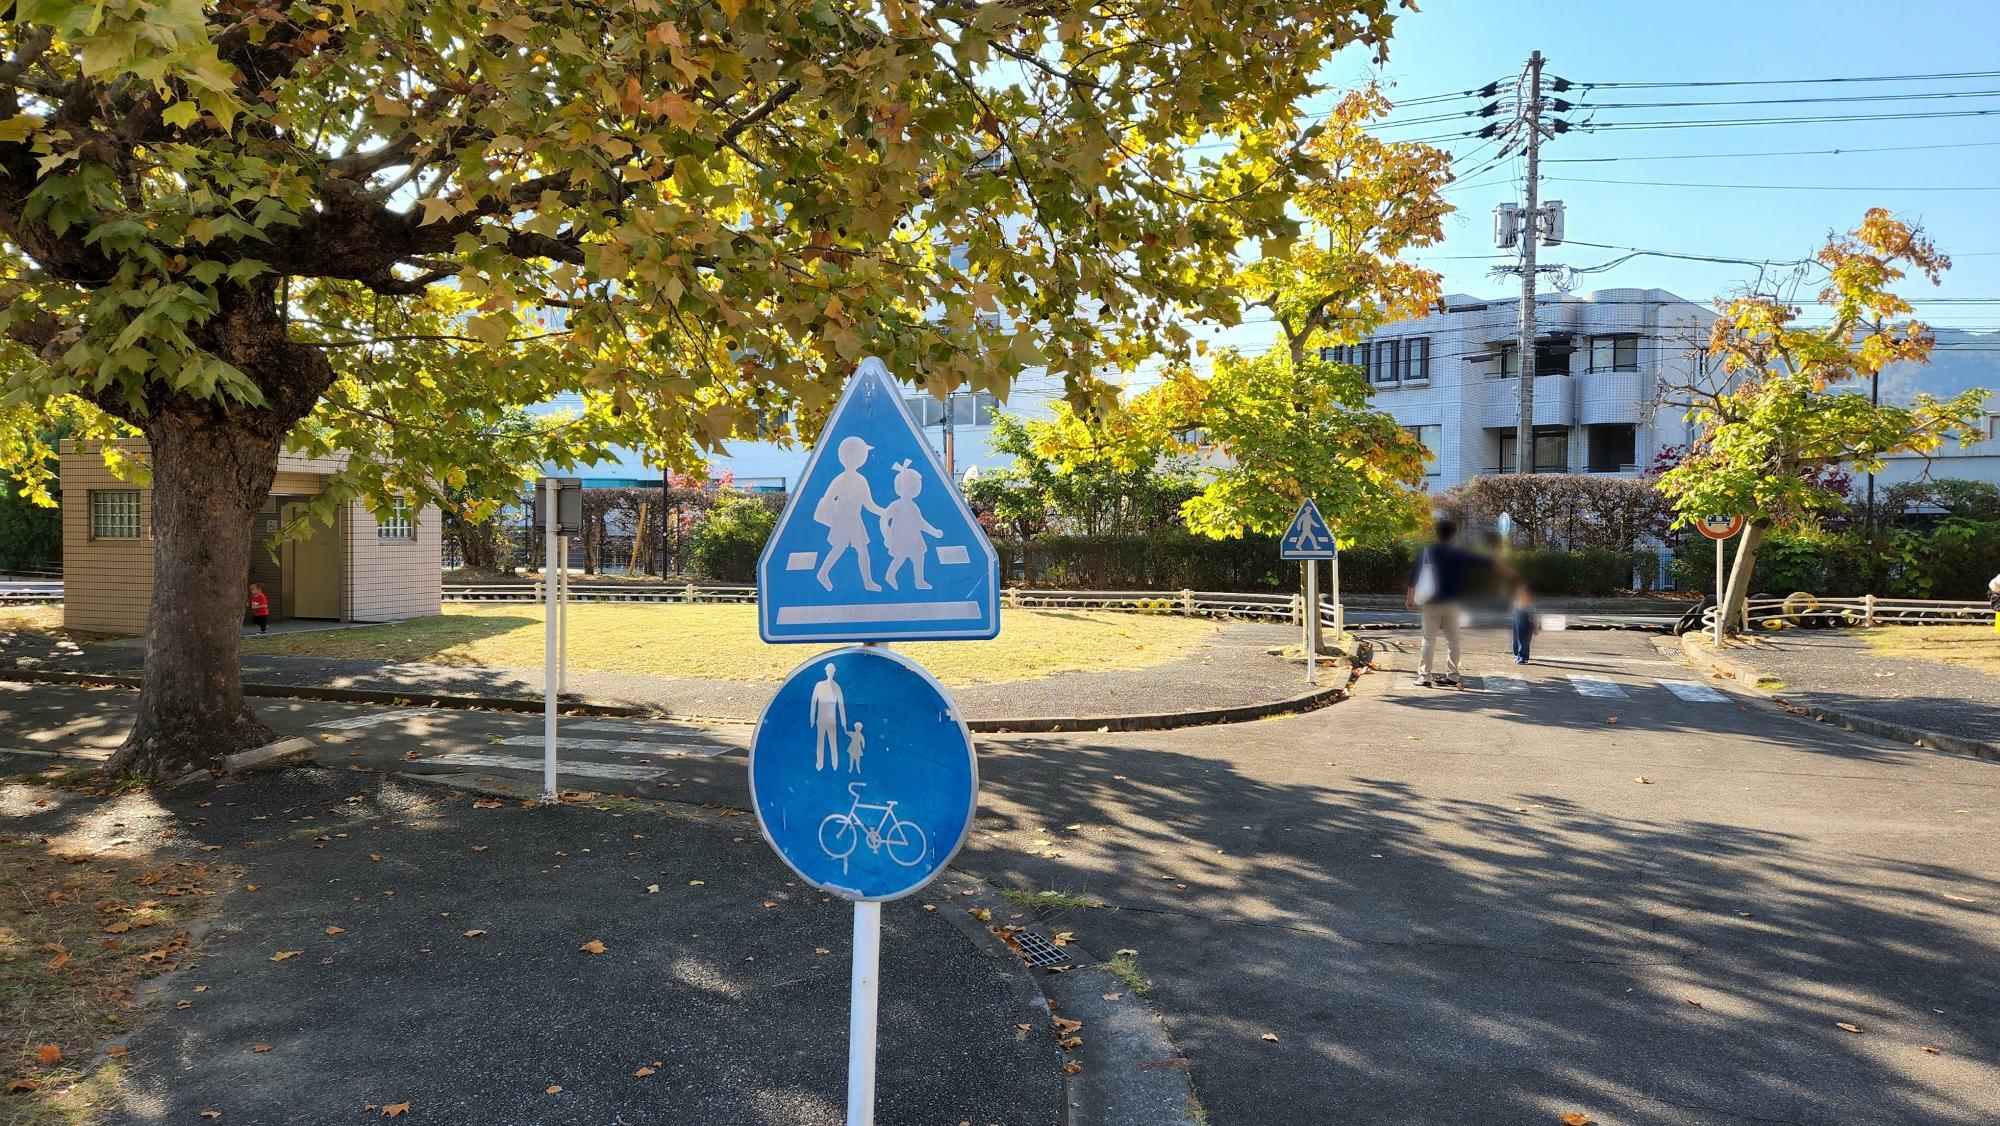 園内には様々な道路標識が設置されている。お子さんにとって学びのポイントにもなります